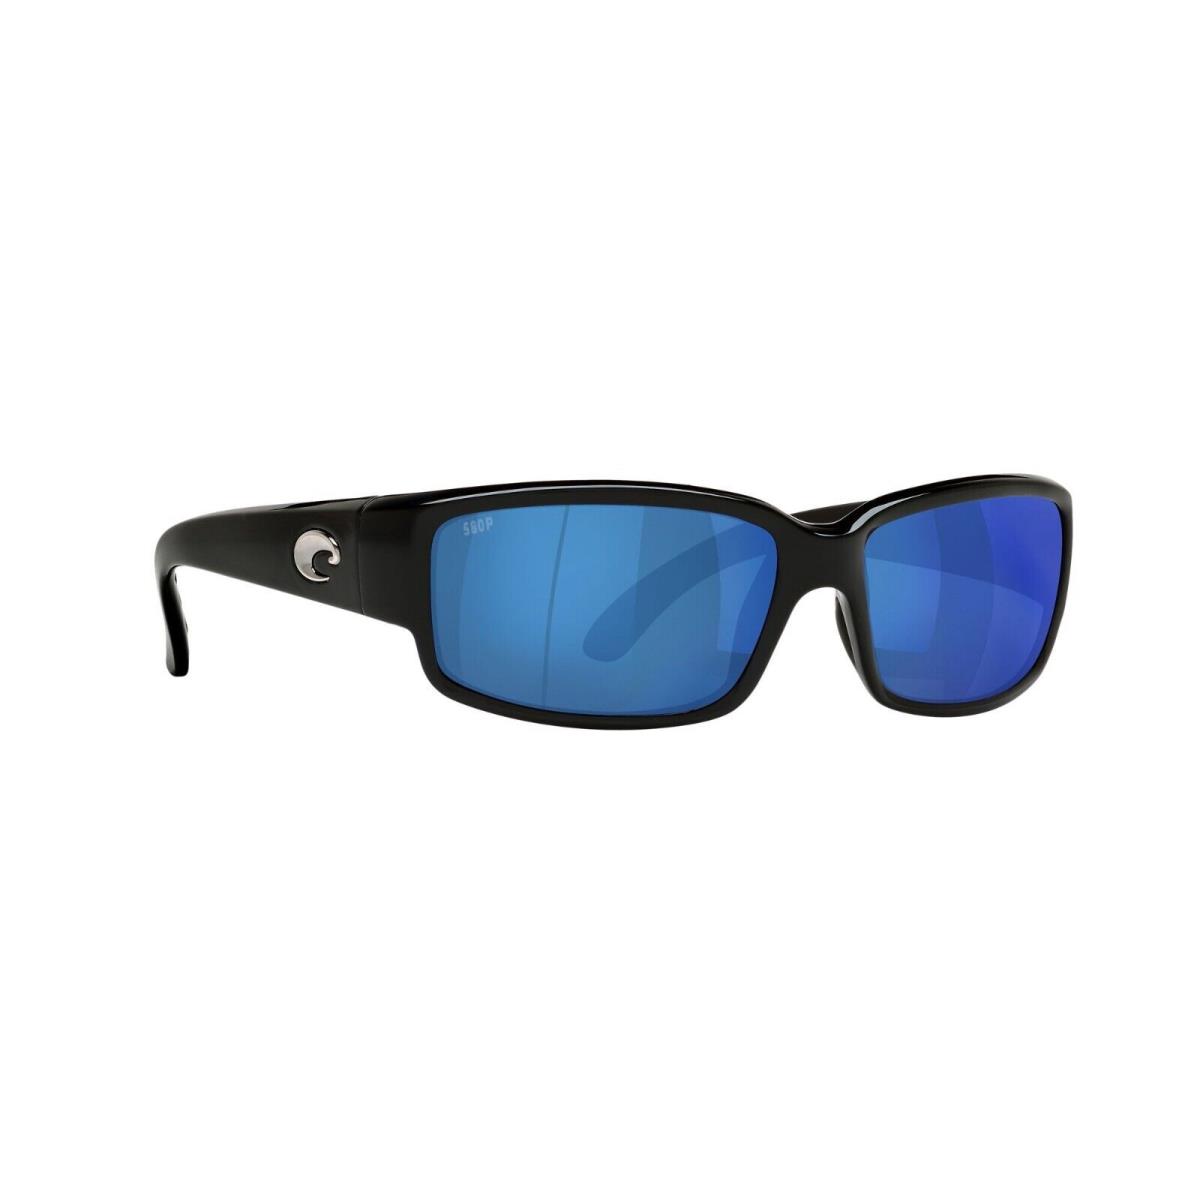 Costa Del Mar Caballito Sunglasses Shiny Black w Blue Mirror Polarized 580P  Lens - Costa Del Mar sunglasses 